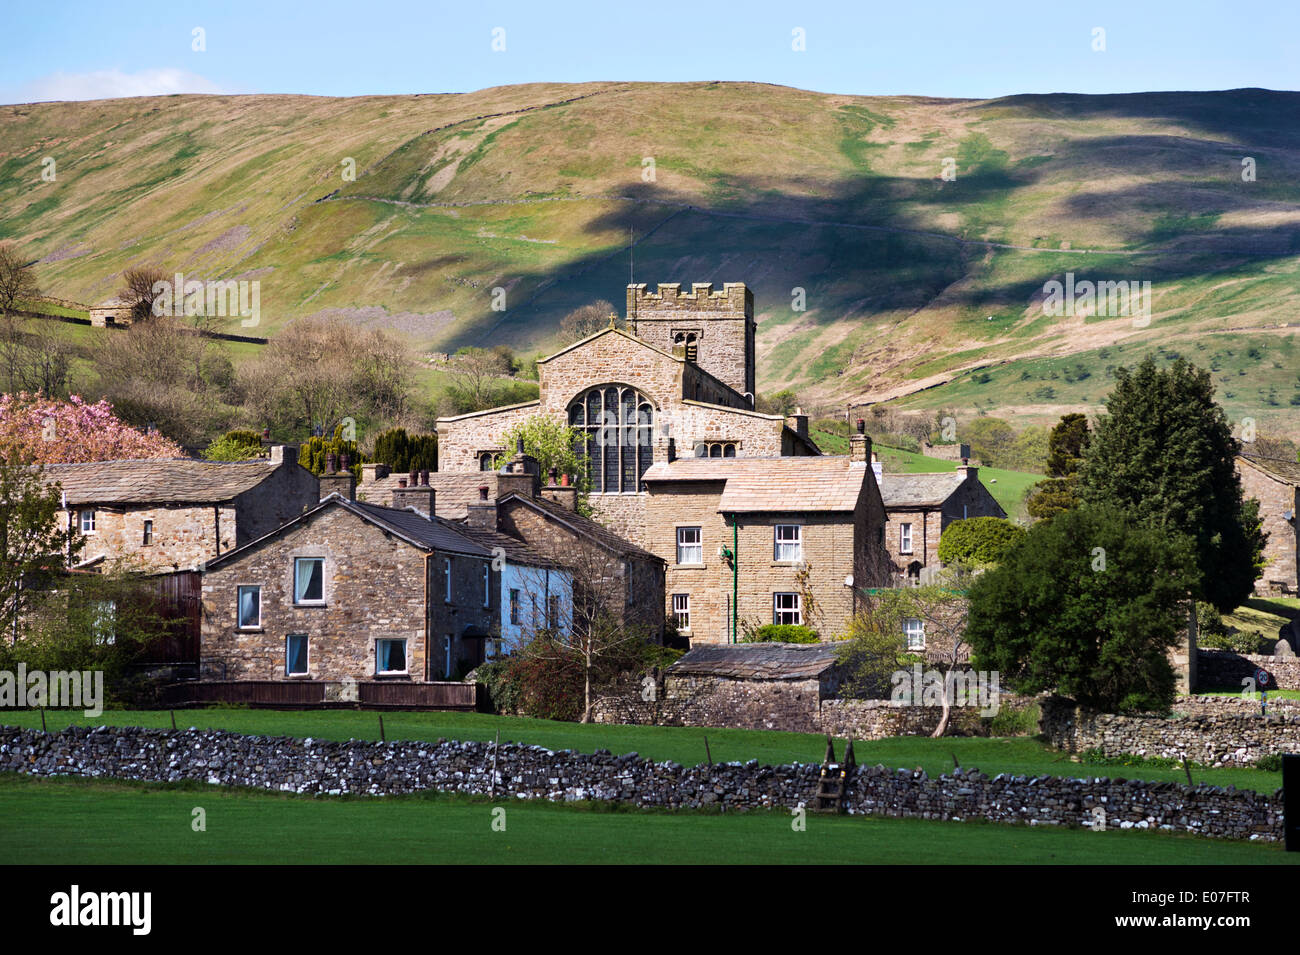 Matinée de printemps, le village de Dent, Cumbria, Royaume-Uni, situé dans le Parc National des Yorkshire Dales, au Royaume-Uni. Montrant Église de St Andrew. Banque D'Images